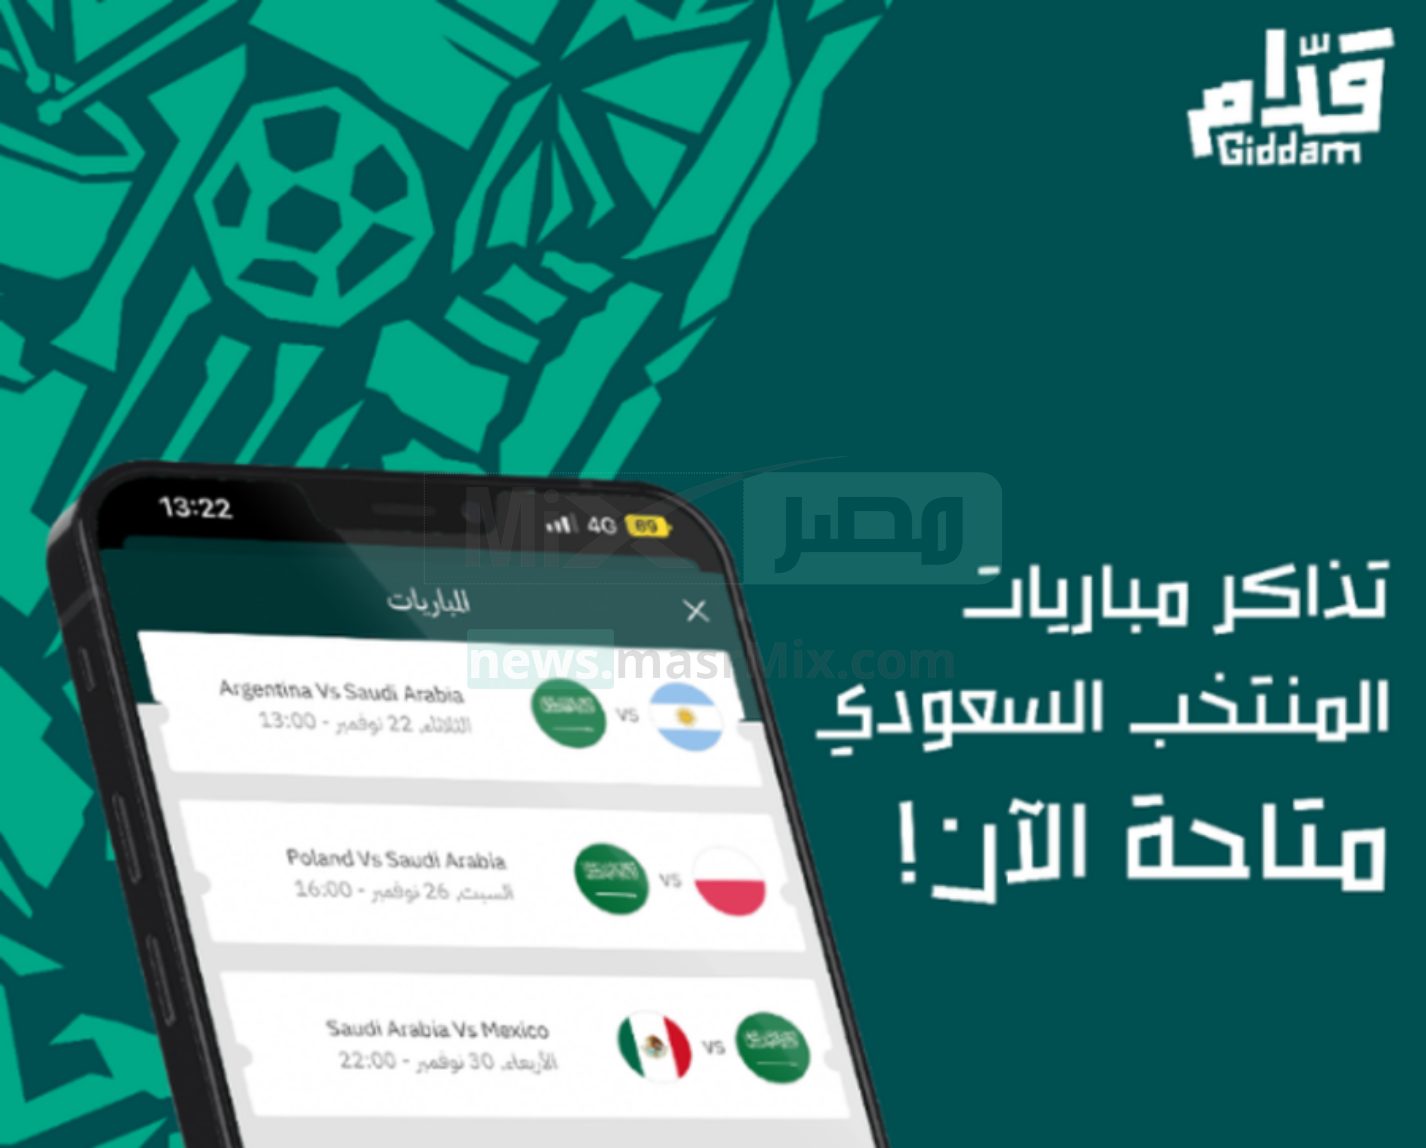 رابط تحميل تطبيق قدام giddam للأندرويد والآيفون لحجز تذاكر مباريات المنتخب السعودي في كأس العالم 2022